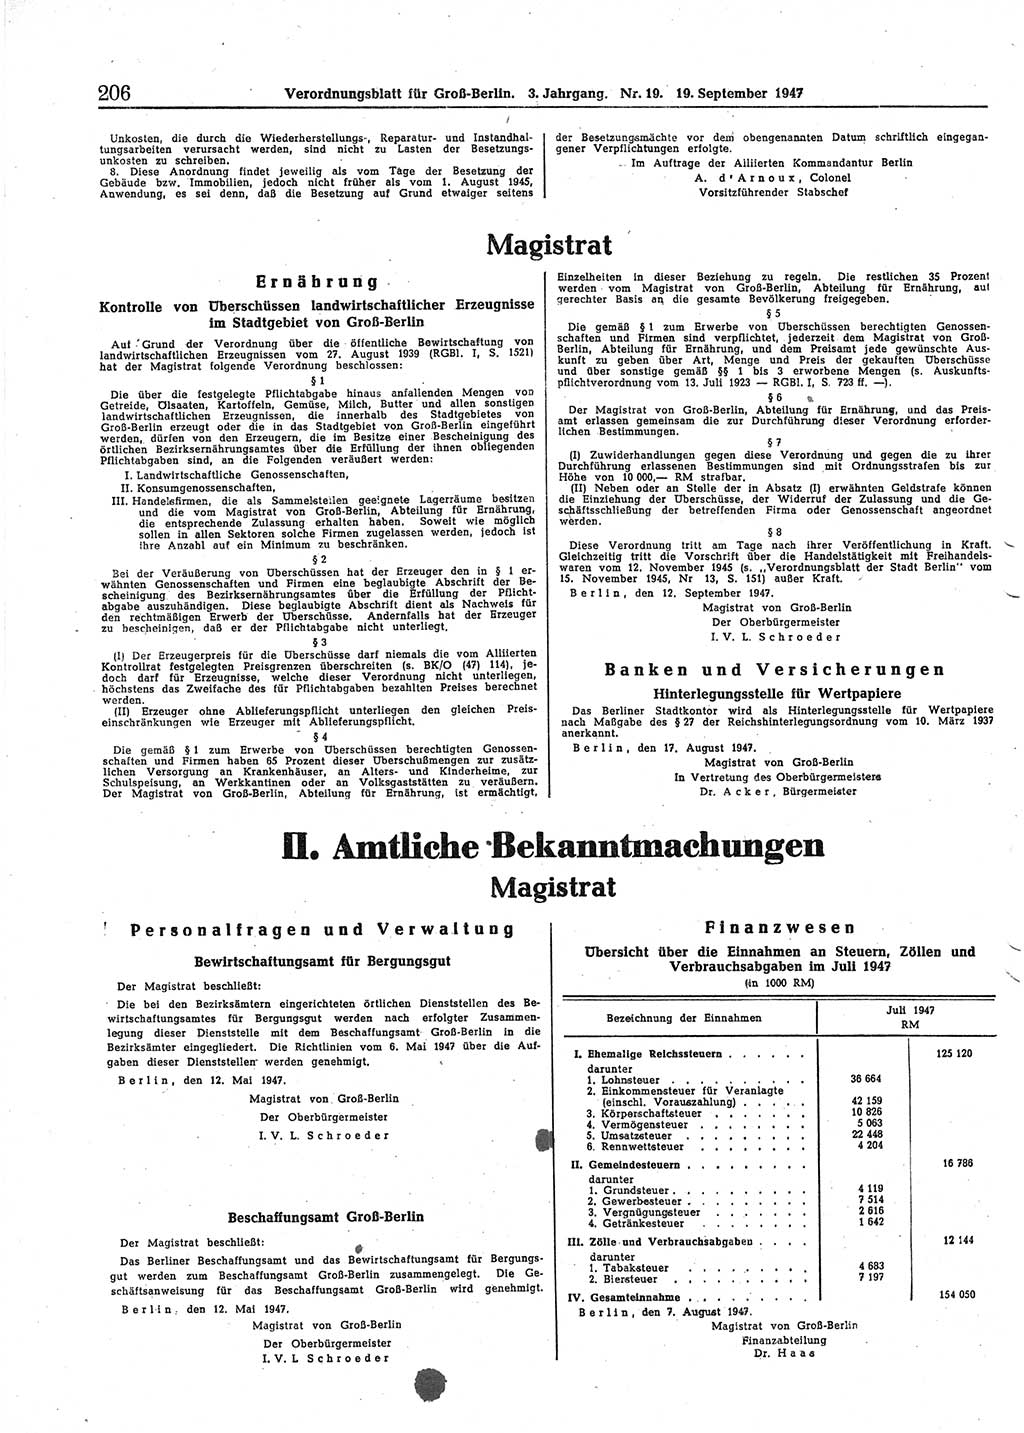 Verordnungsblatt (VOBl.) für Groß-Berlin 1947, Seite 206 (VOBl. Bln. 1947, S. 206)